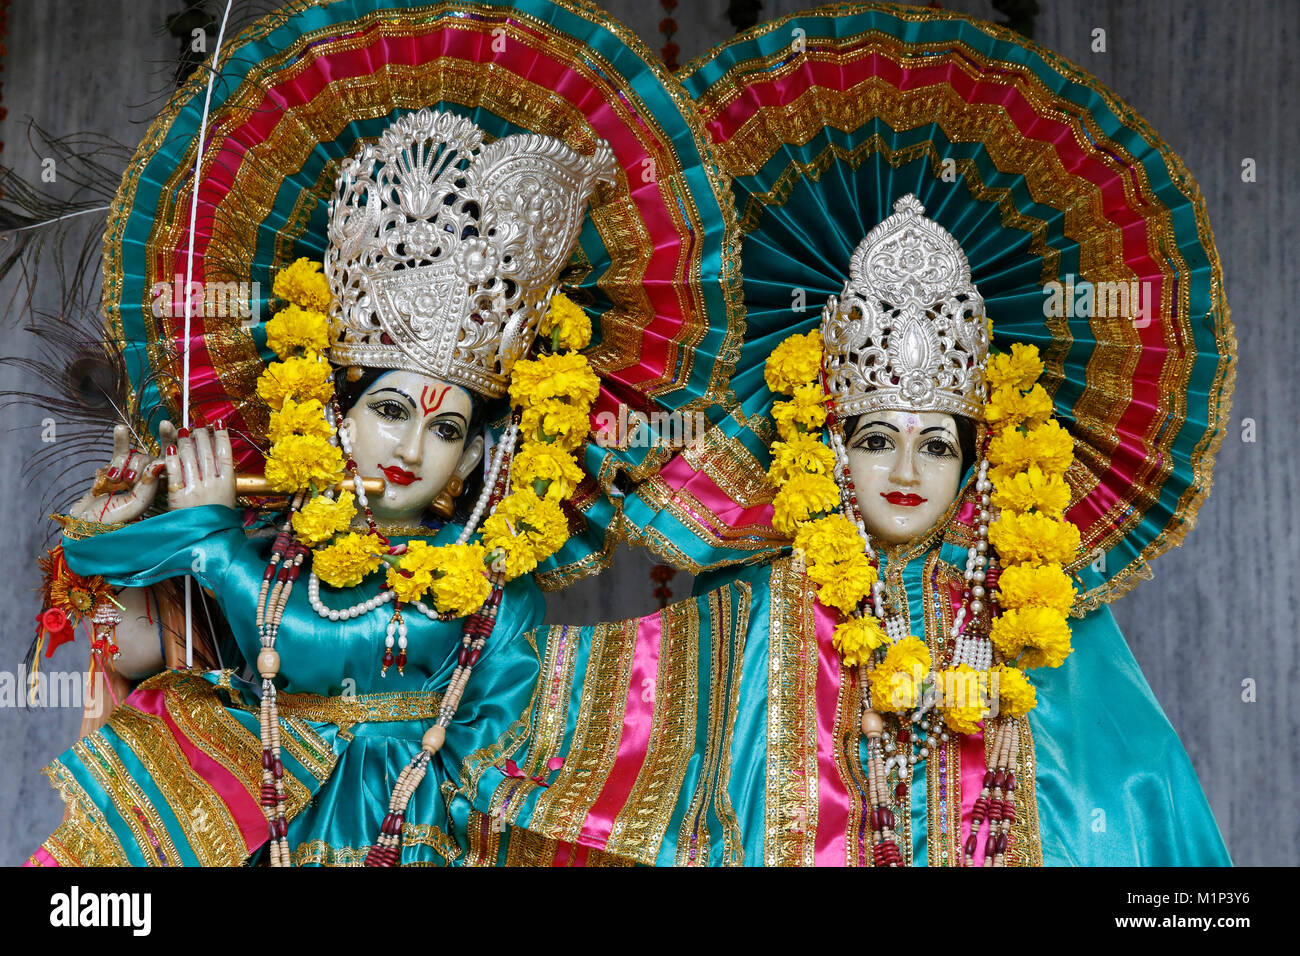 Krishna et Radha murthis (statues) dans un temple hindou de Delhi, Delhi, Inde, Asie Banque D'Images